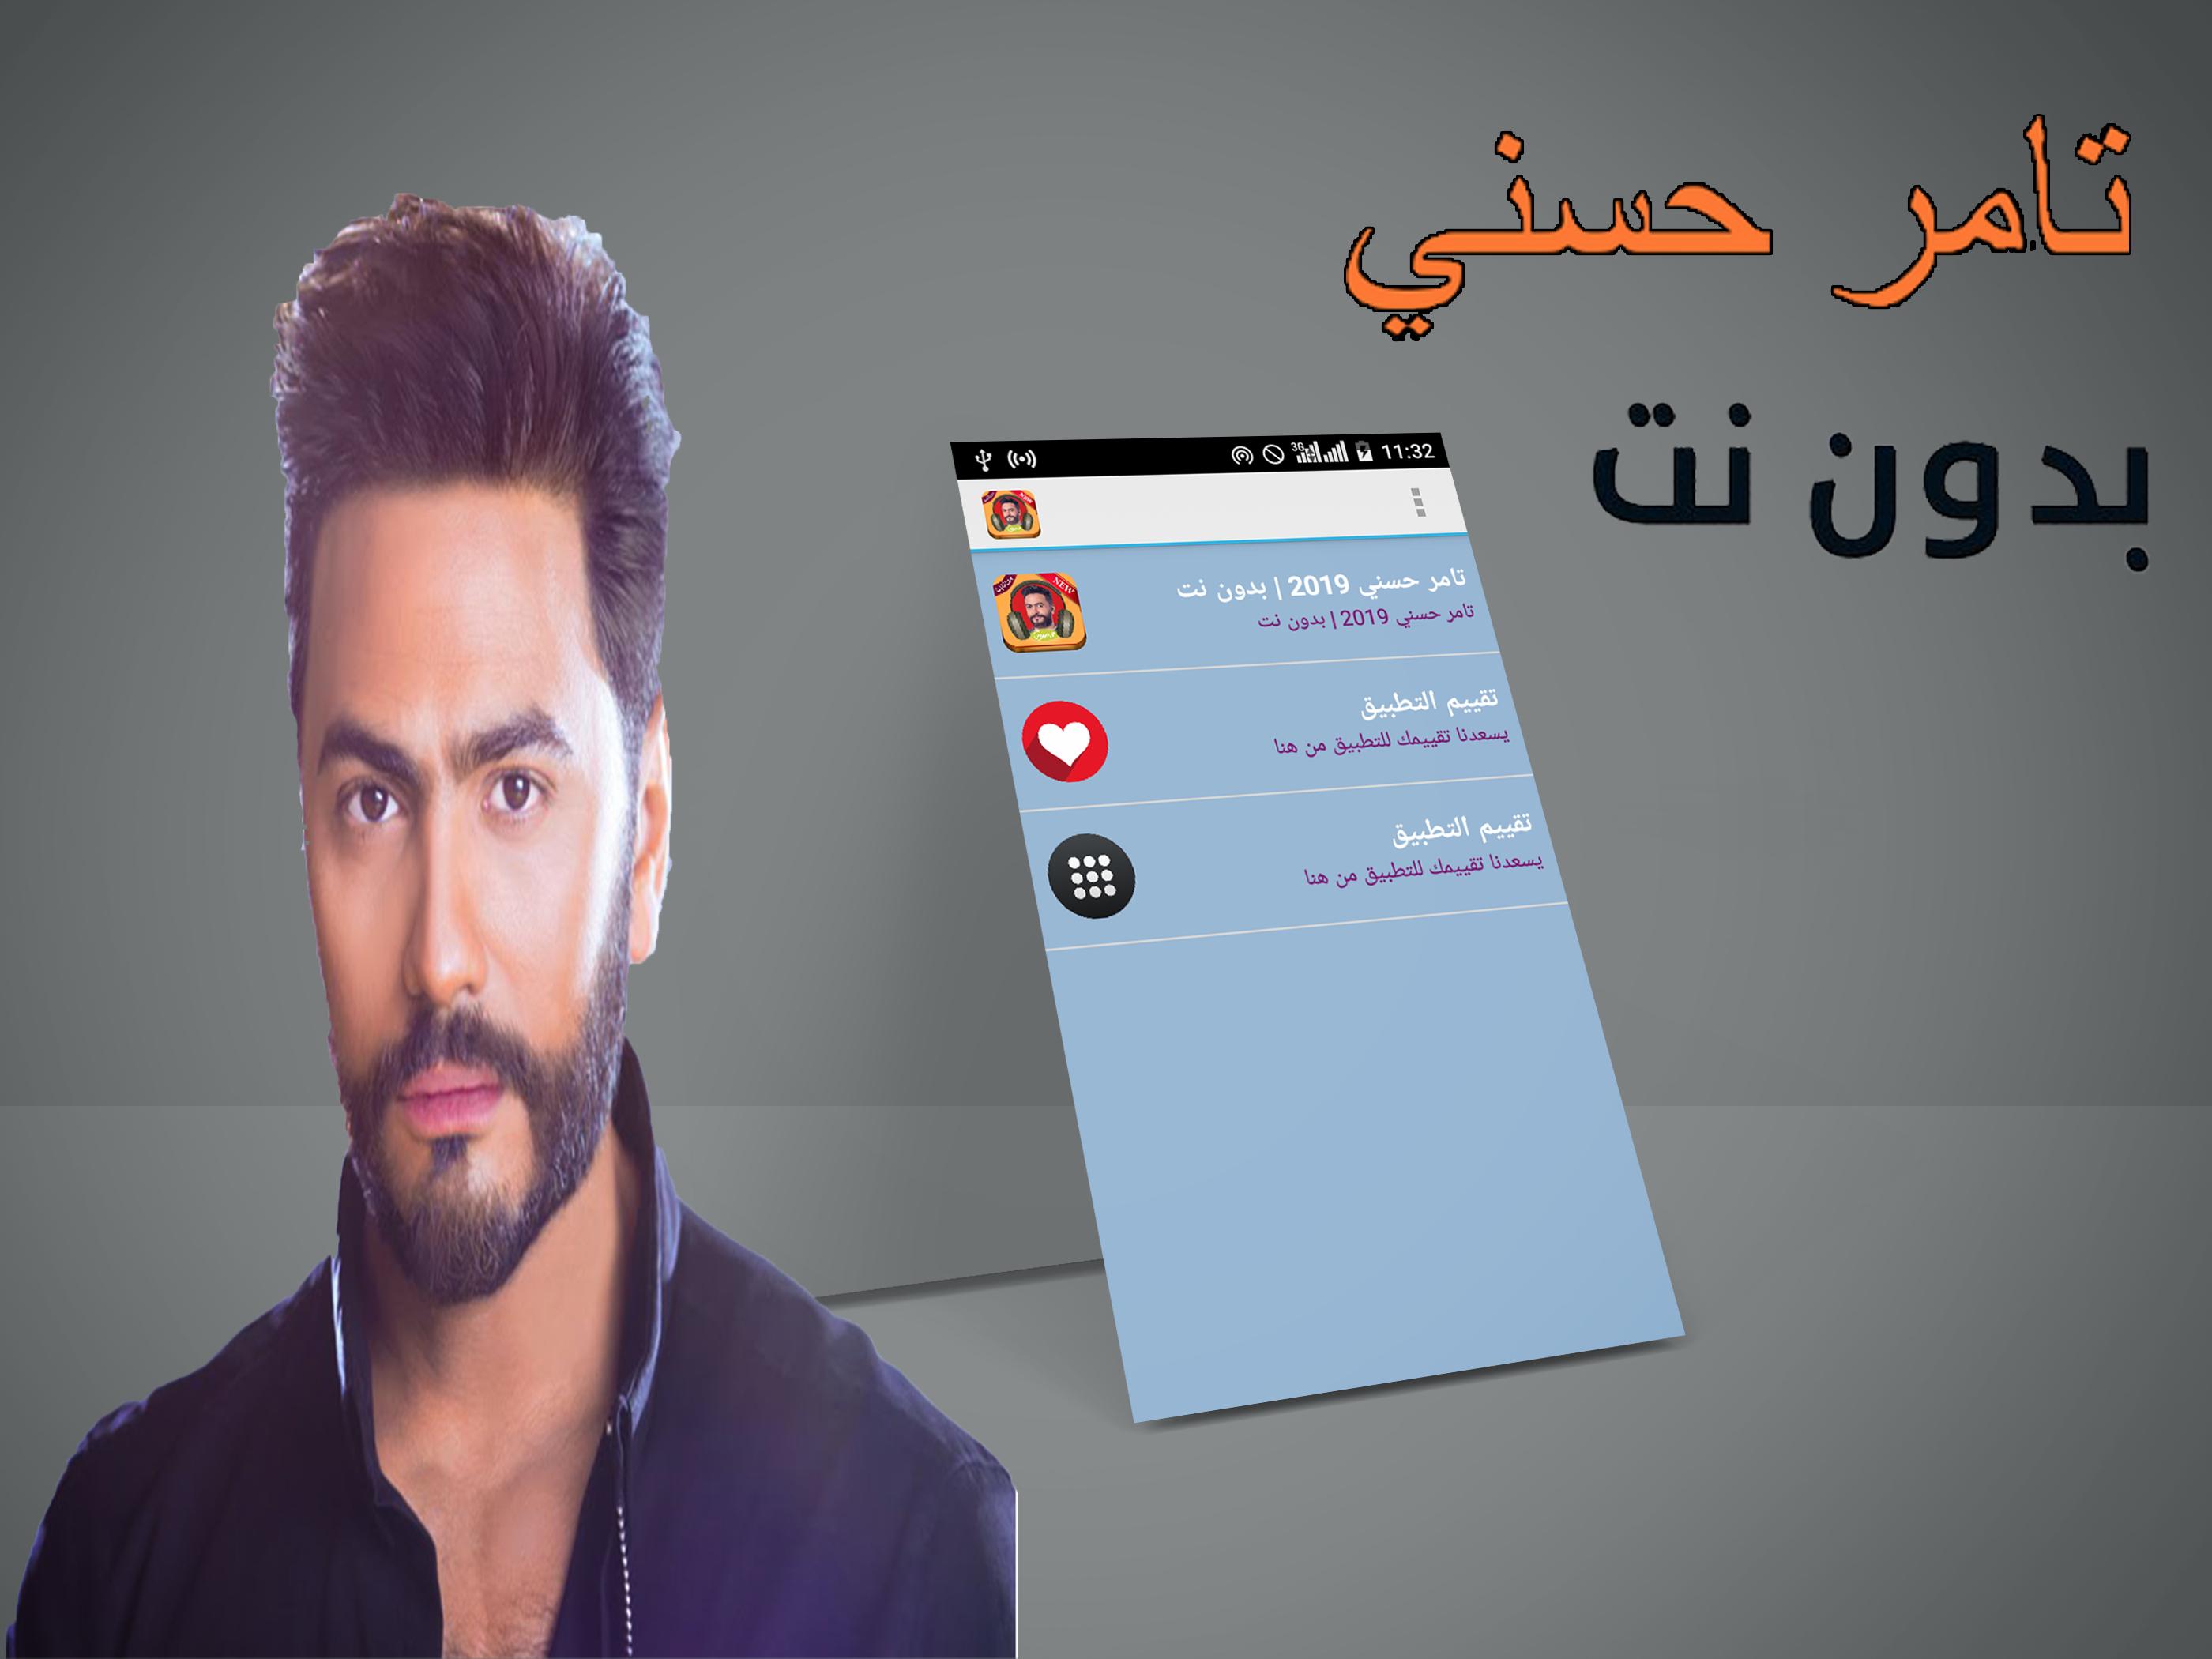 اغاني تامر حسني 2018 بدون نت Tamer Hosny Mp3 For Android Apk